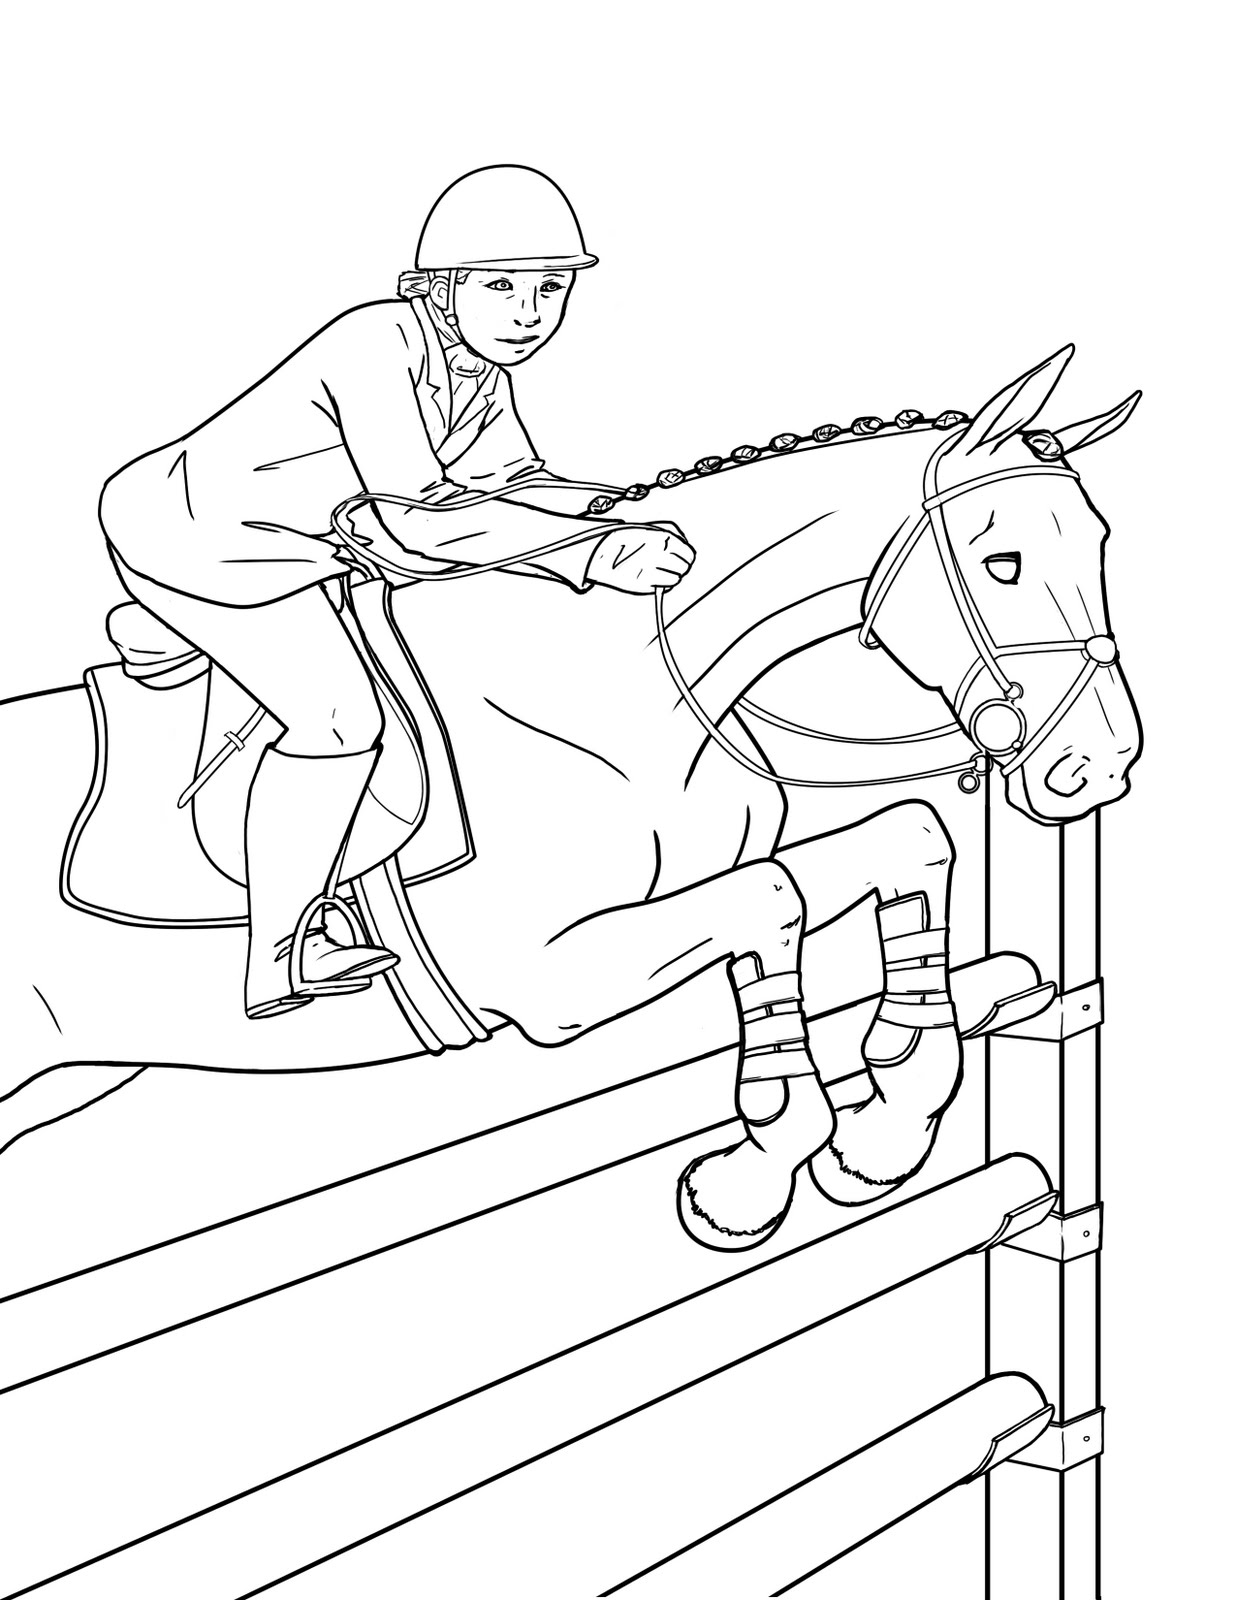 Конюшня рисунок. Раскраска. Лошади. Лошадь раскраска для детей. Конный спорт раскраска. Раскраска конный спорт для детей.